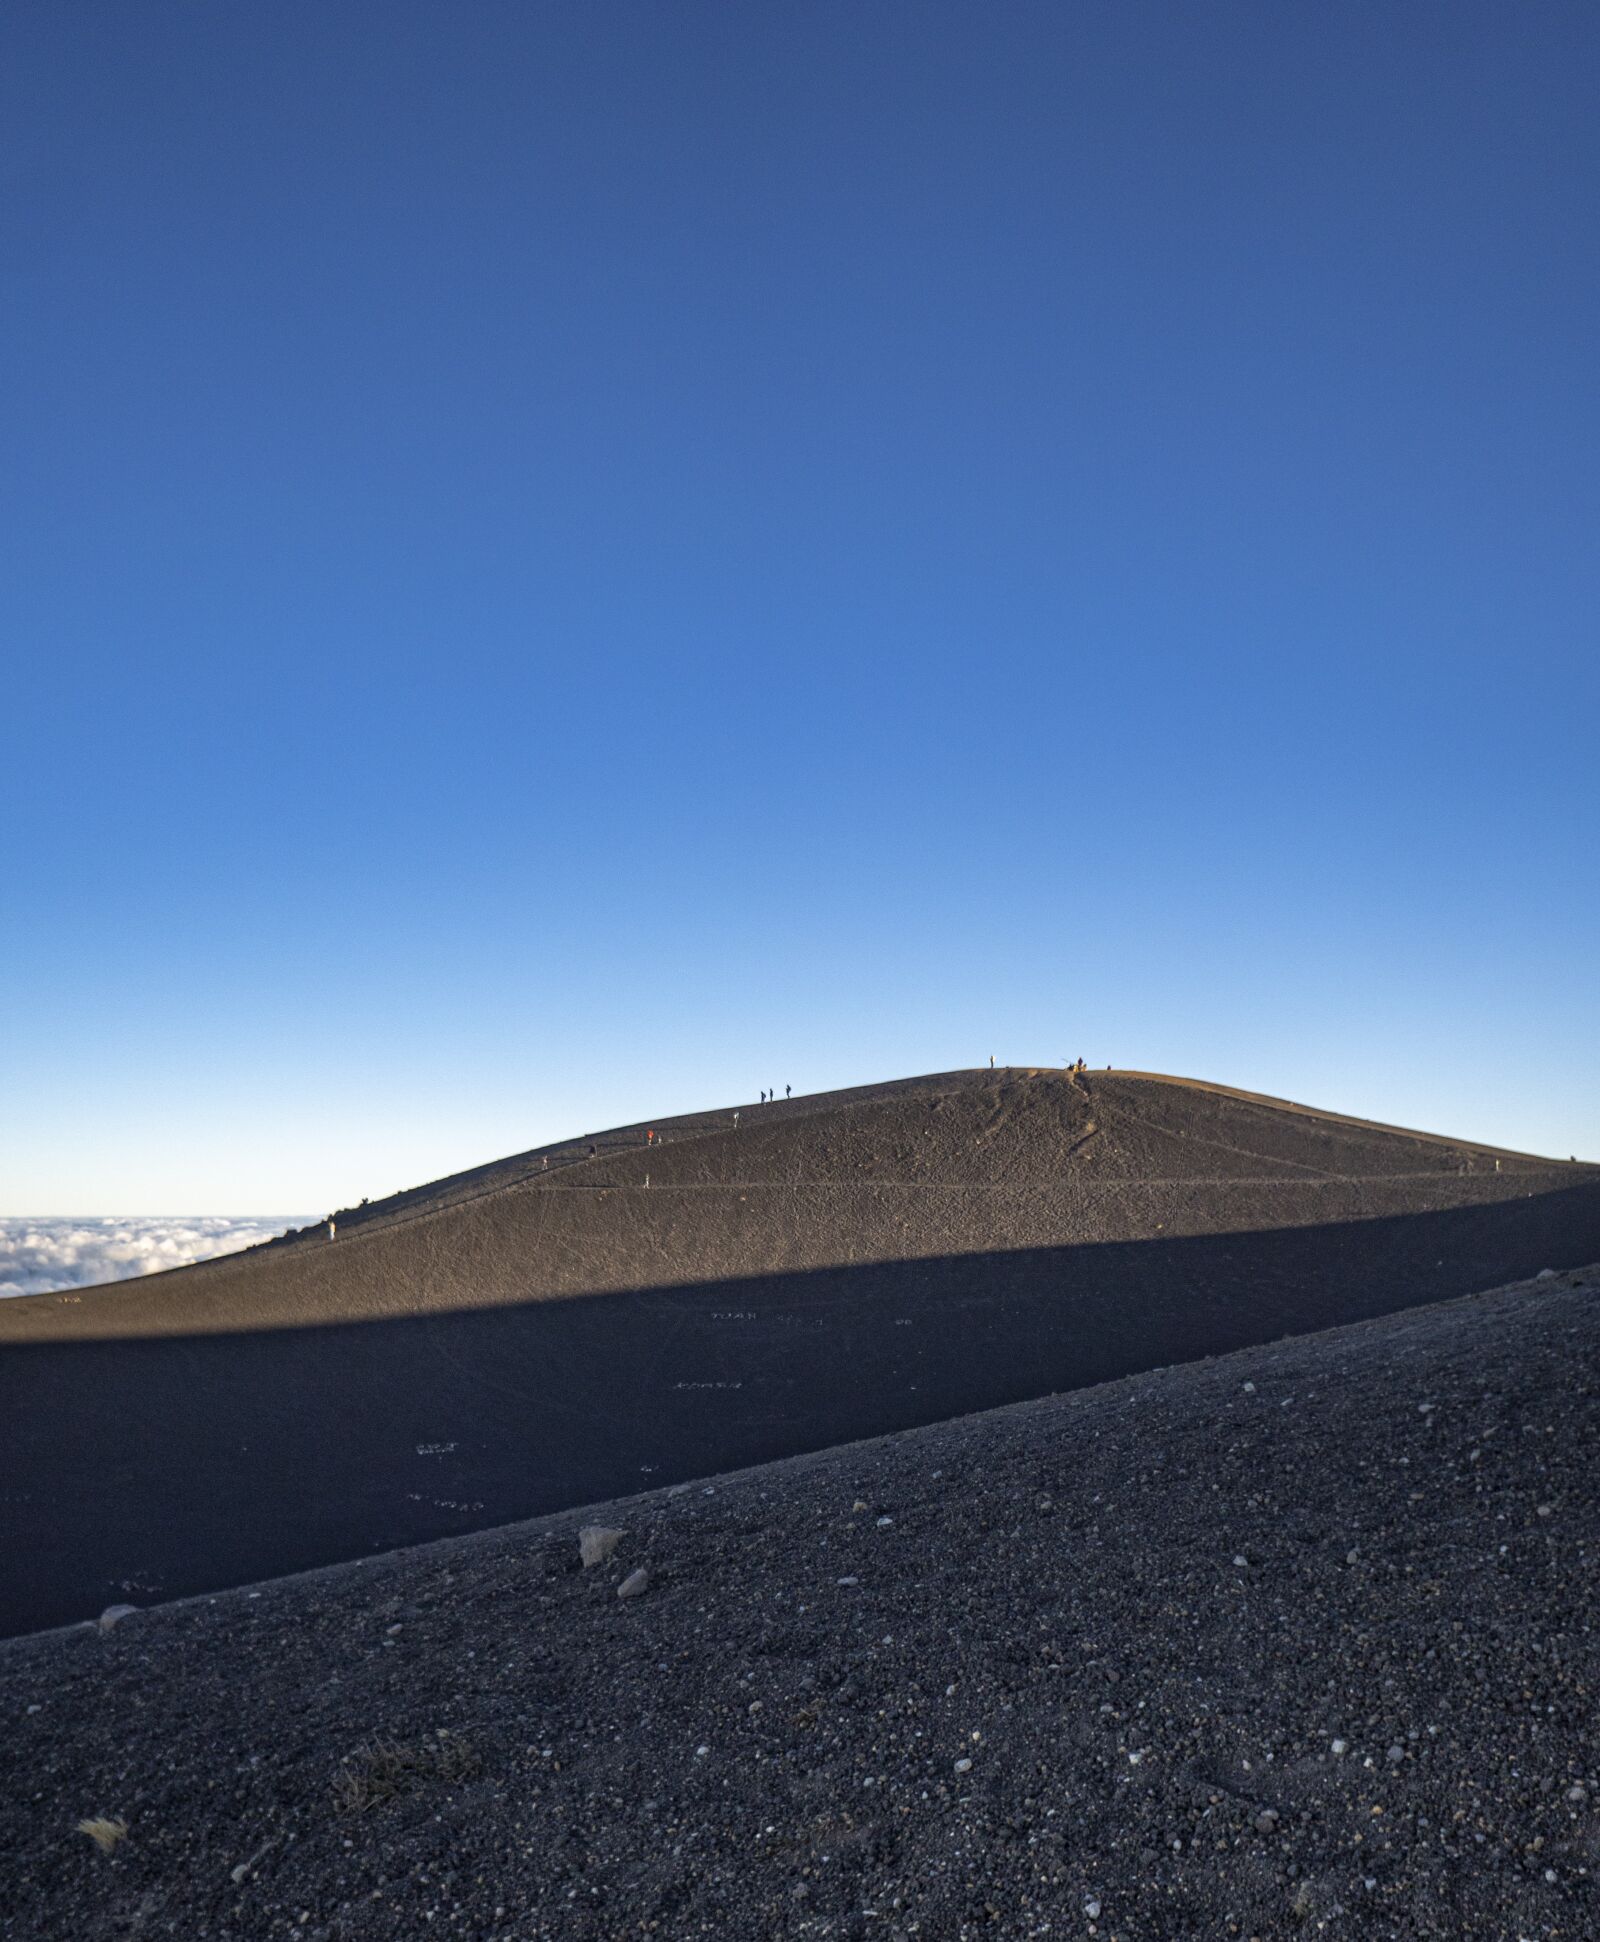 Sony E 16mm F2.8 sample photo. Volcan, paisaje, acatenango photography